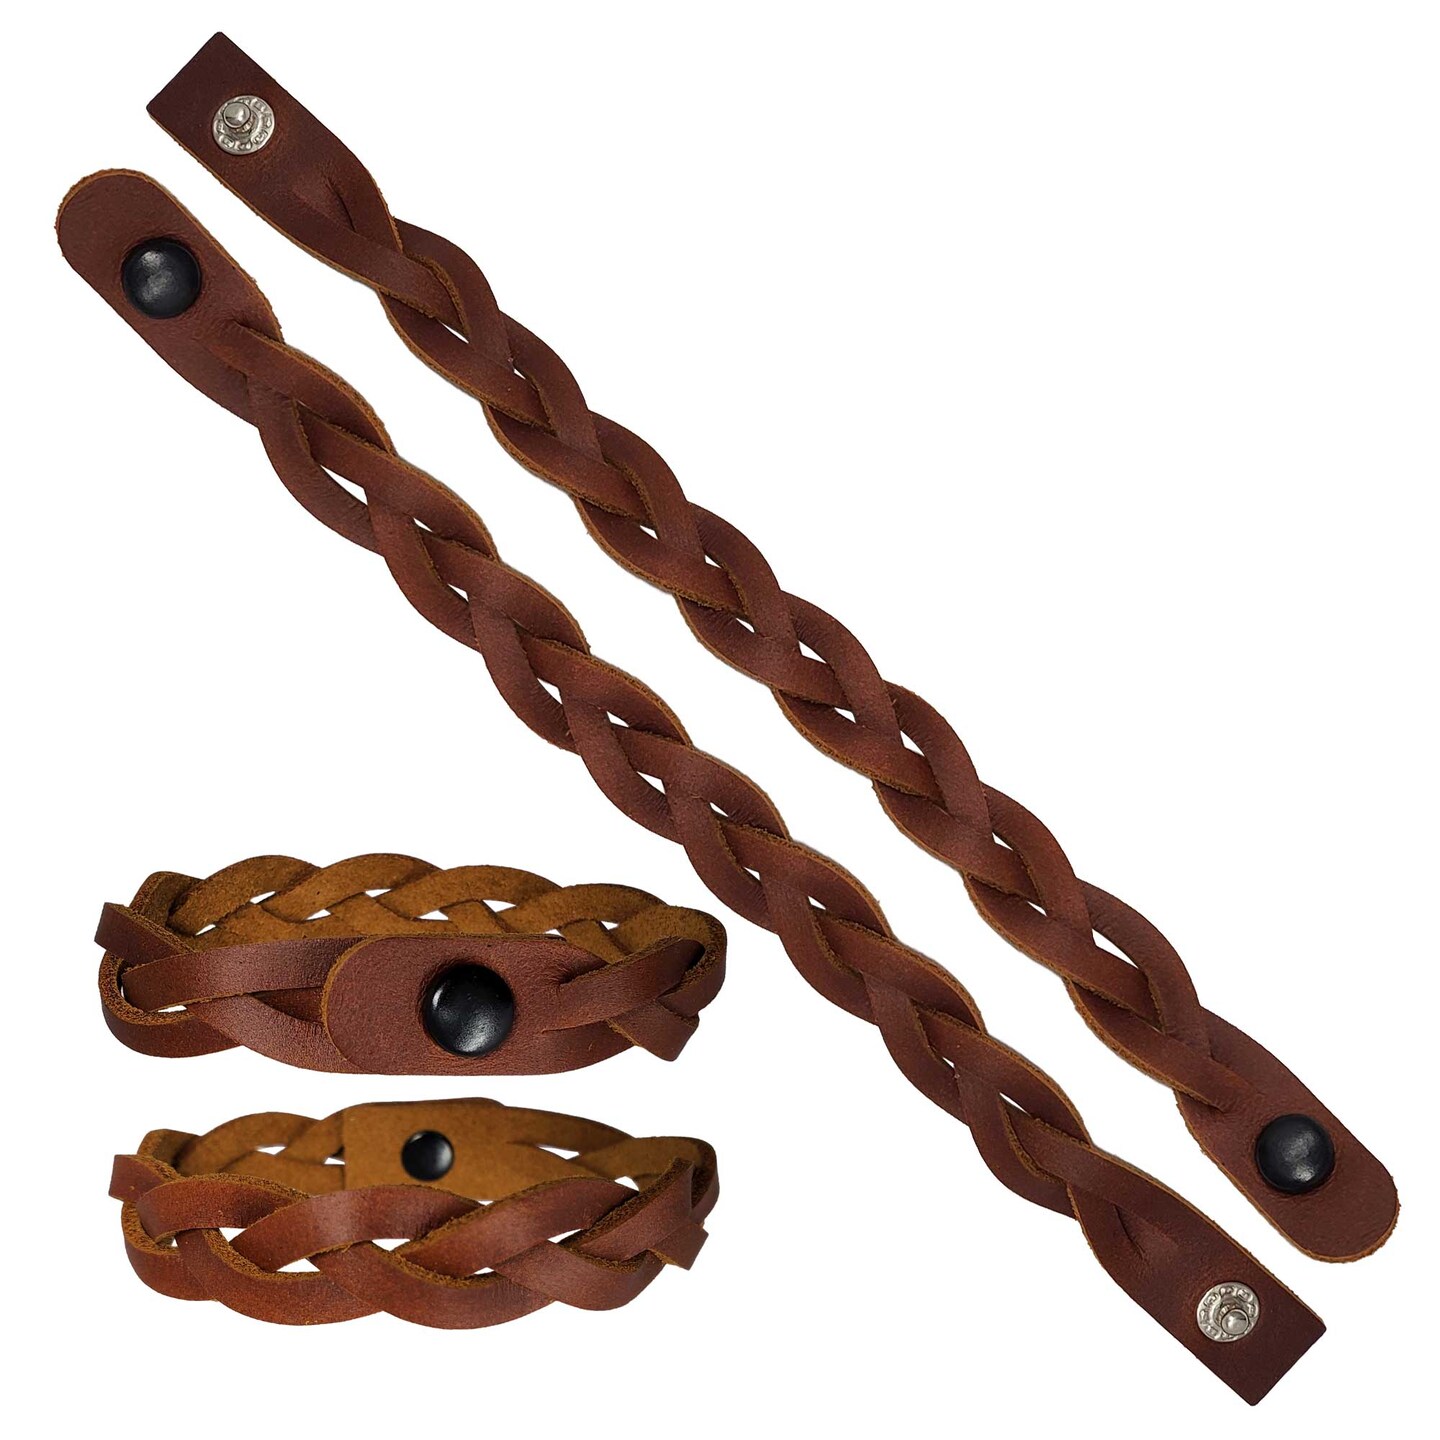 Mystery Braid Leather Bracelets DIY Kit - 8 Pack Ready to Braid Leather Bracelets in 4 Colors - Made in USA